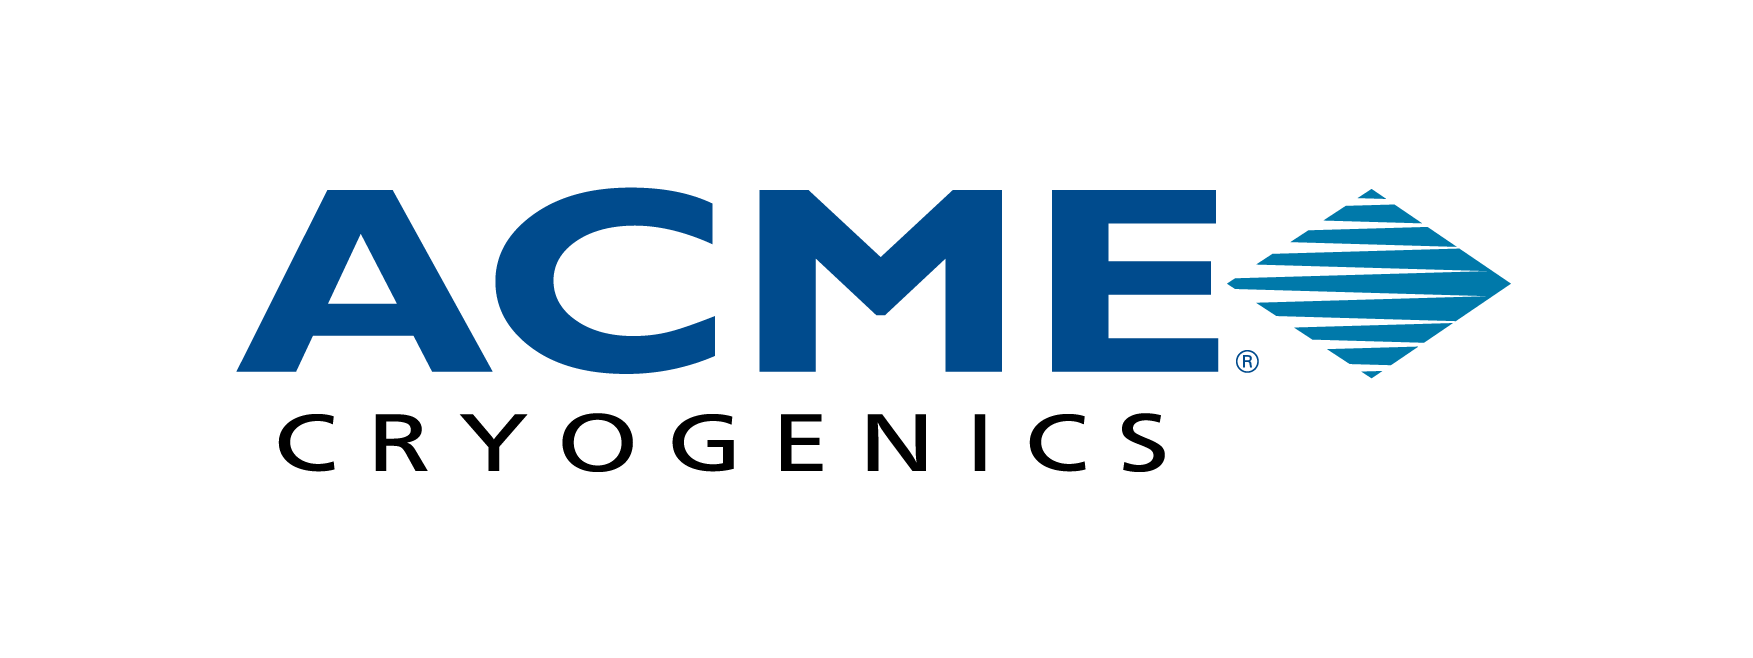 Acme Cryogenics logo